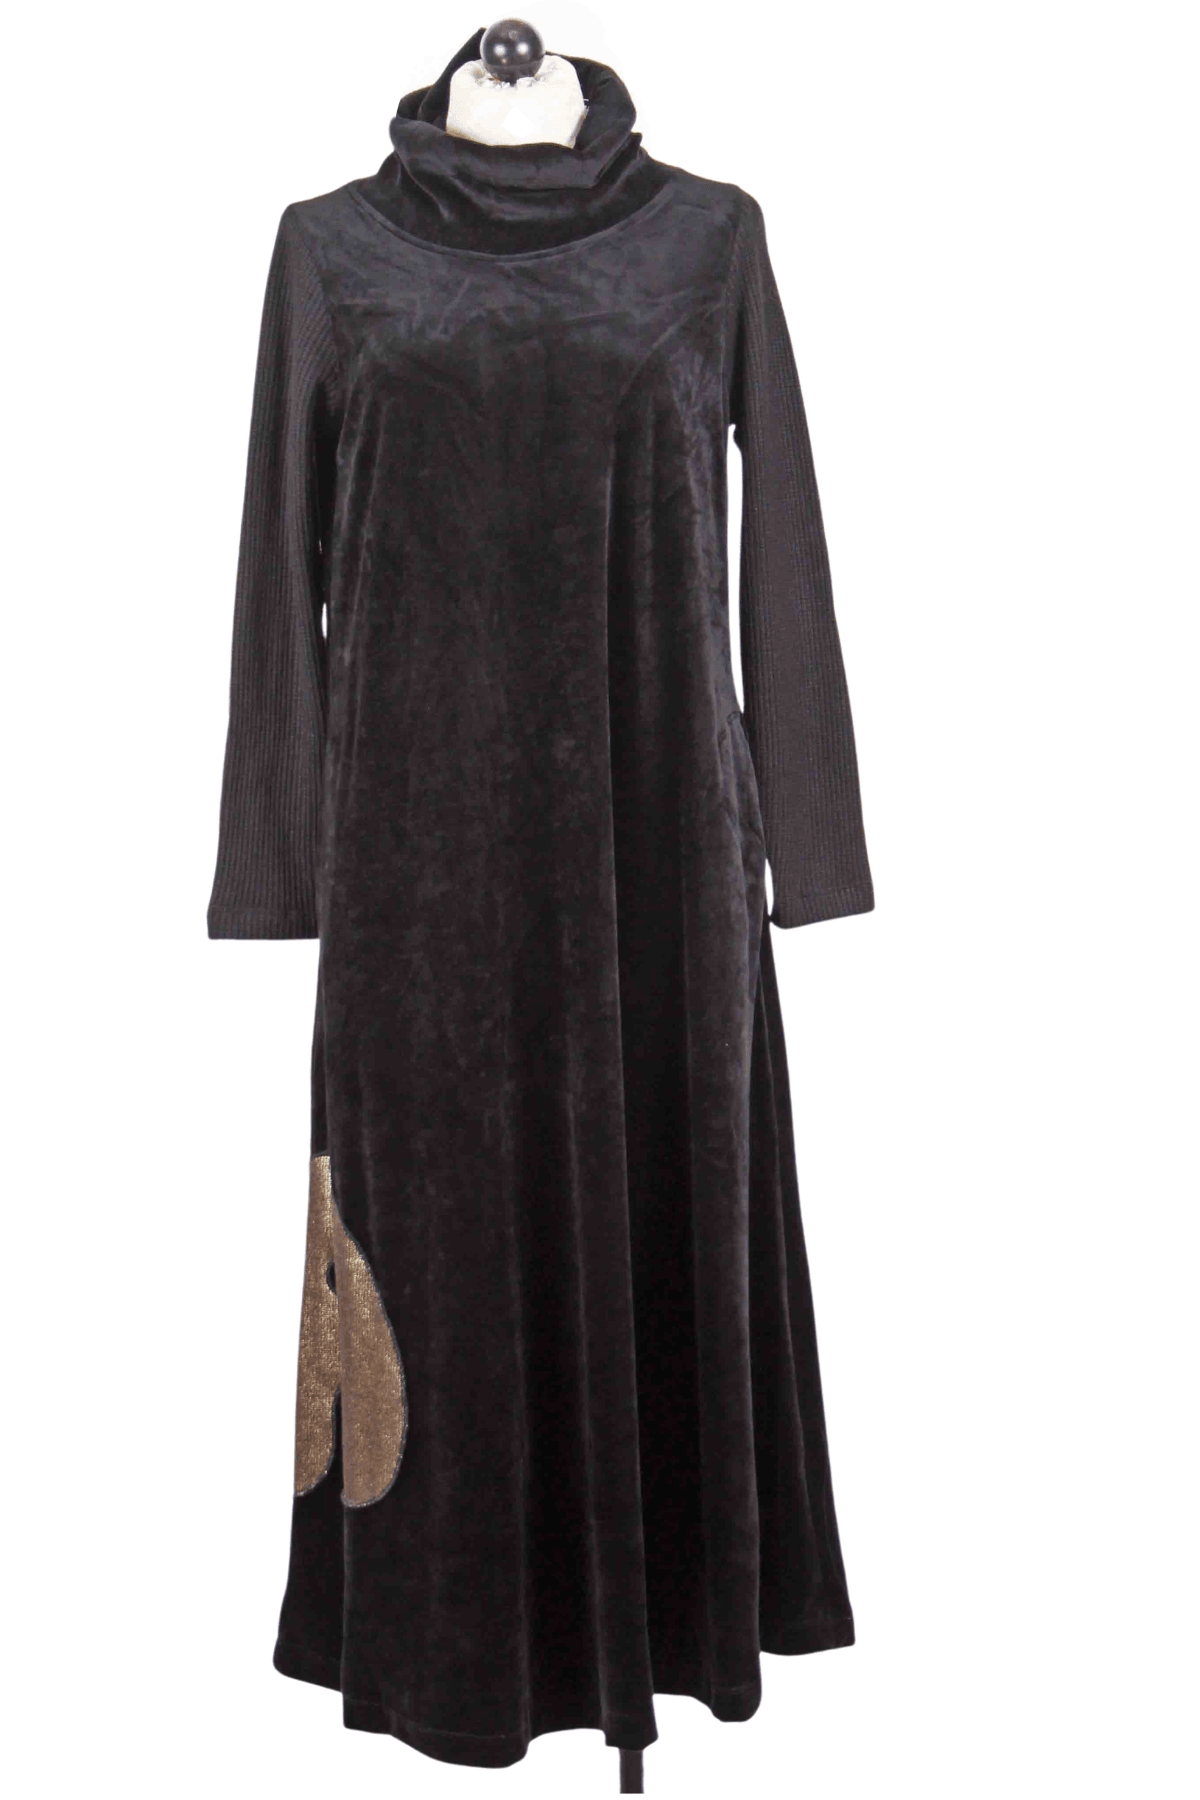 Black Cowl Neck Velvet Dress by Alembika